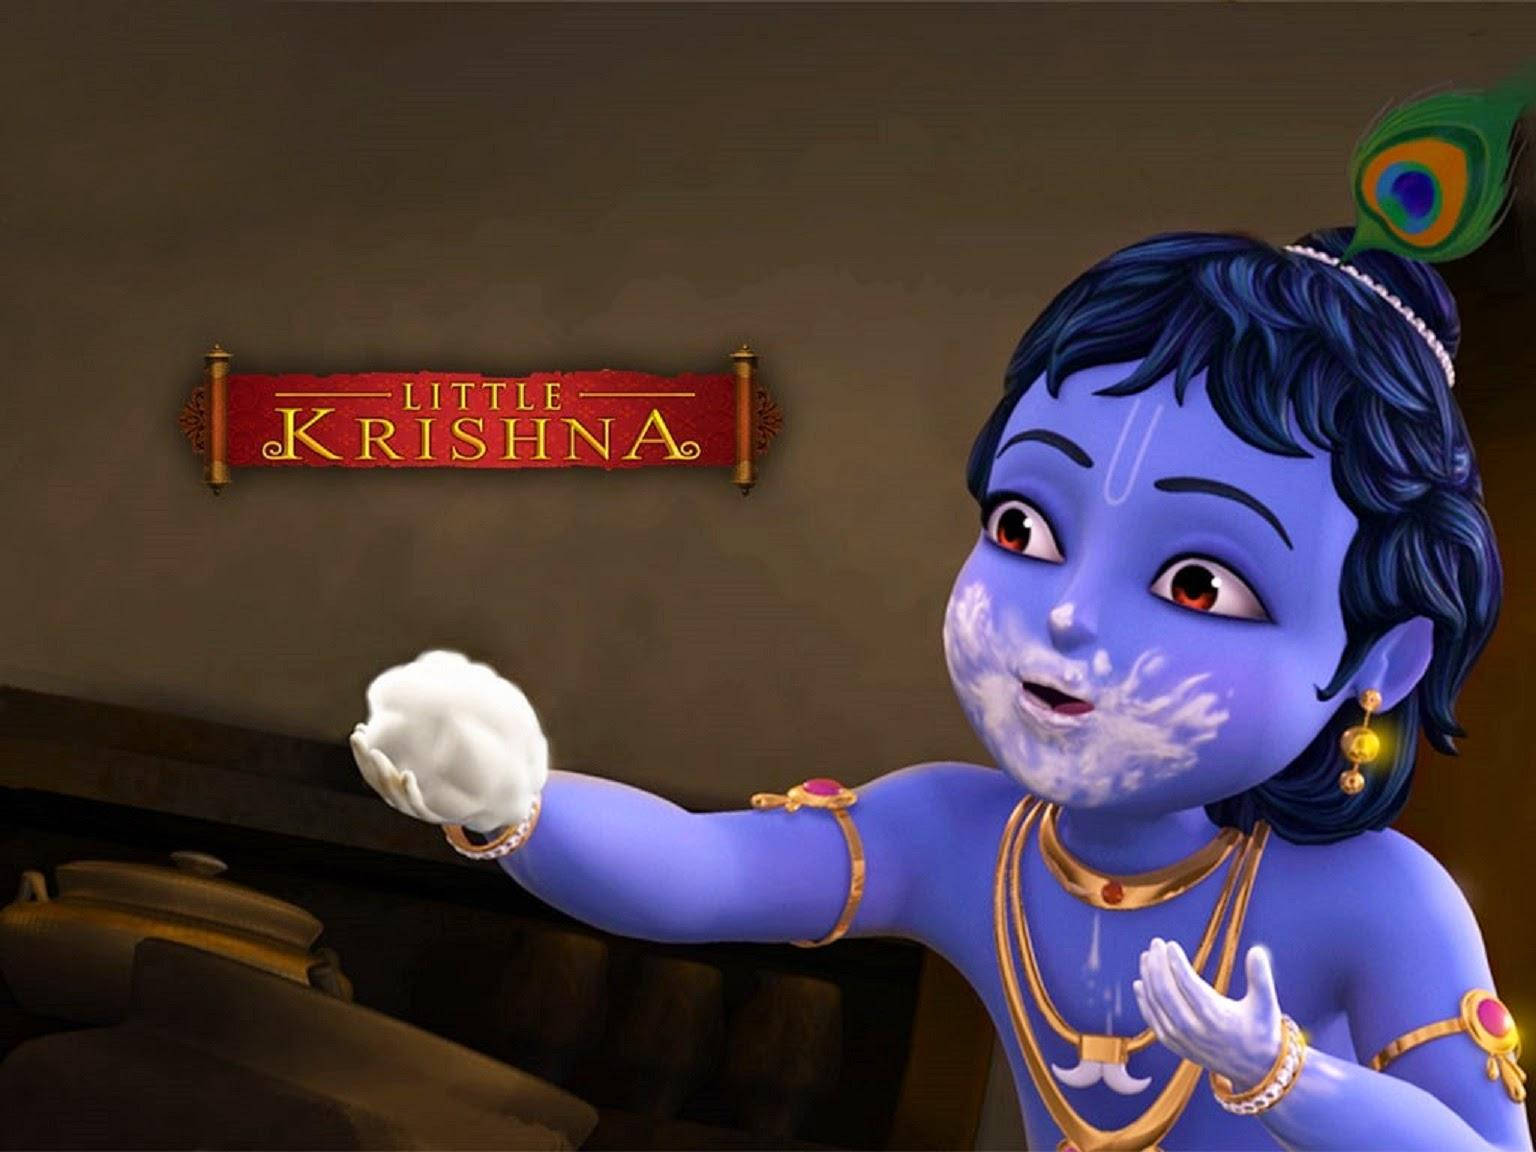 Adorable Little Krishna - Hd Image Holding A Butter Ball. Wallpaper